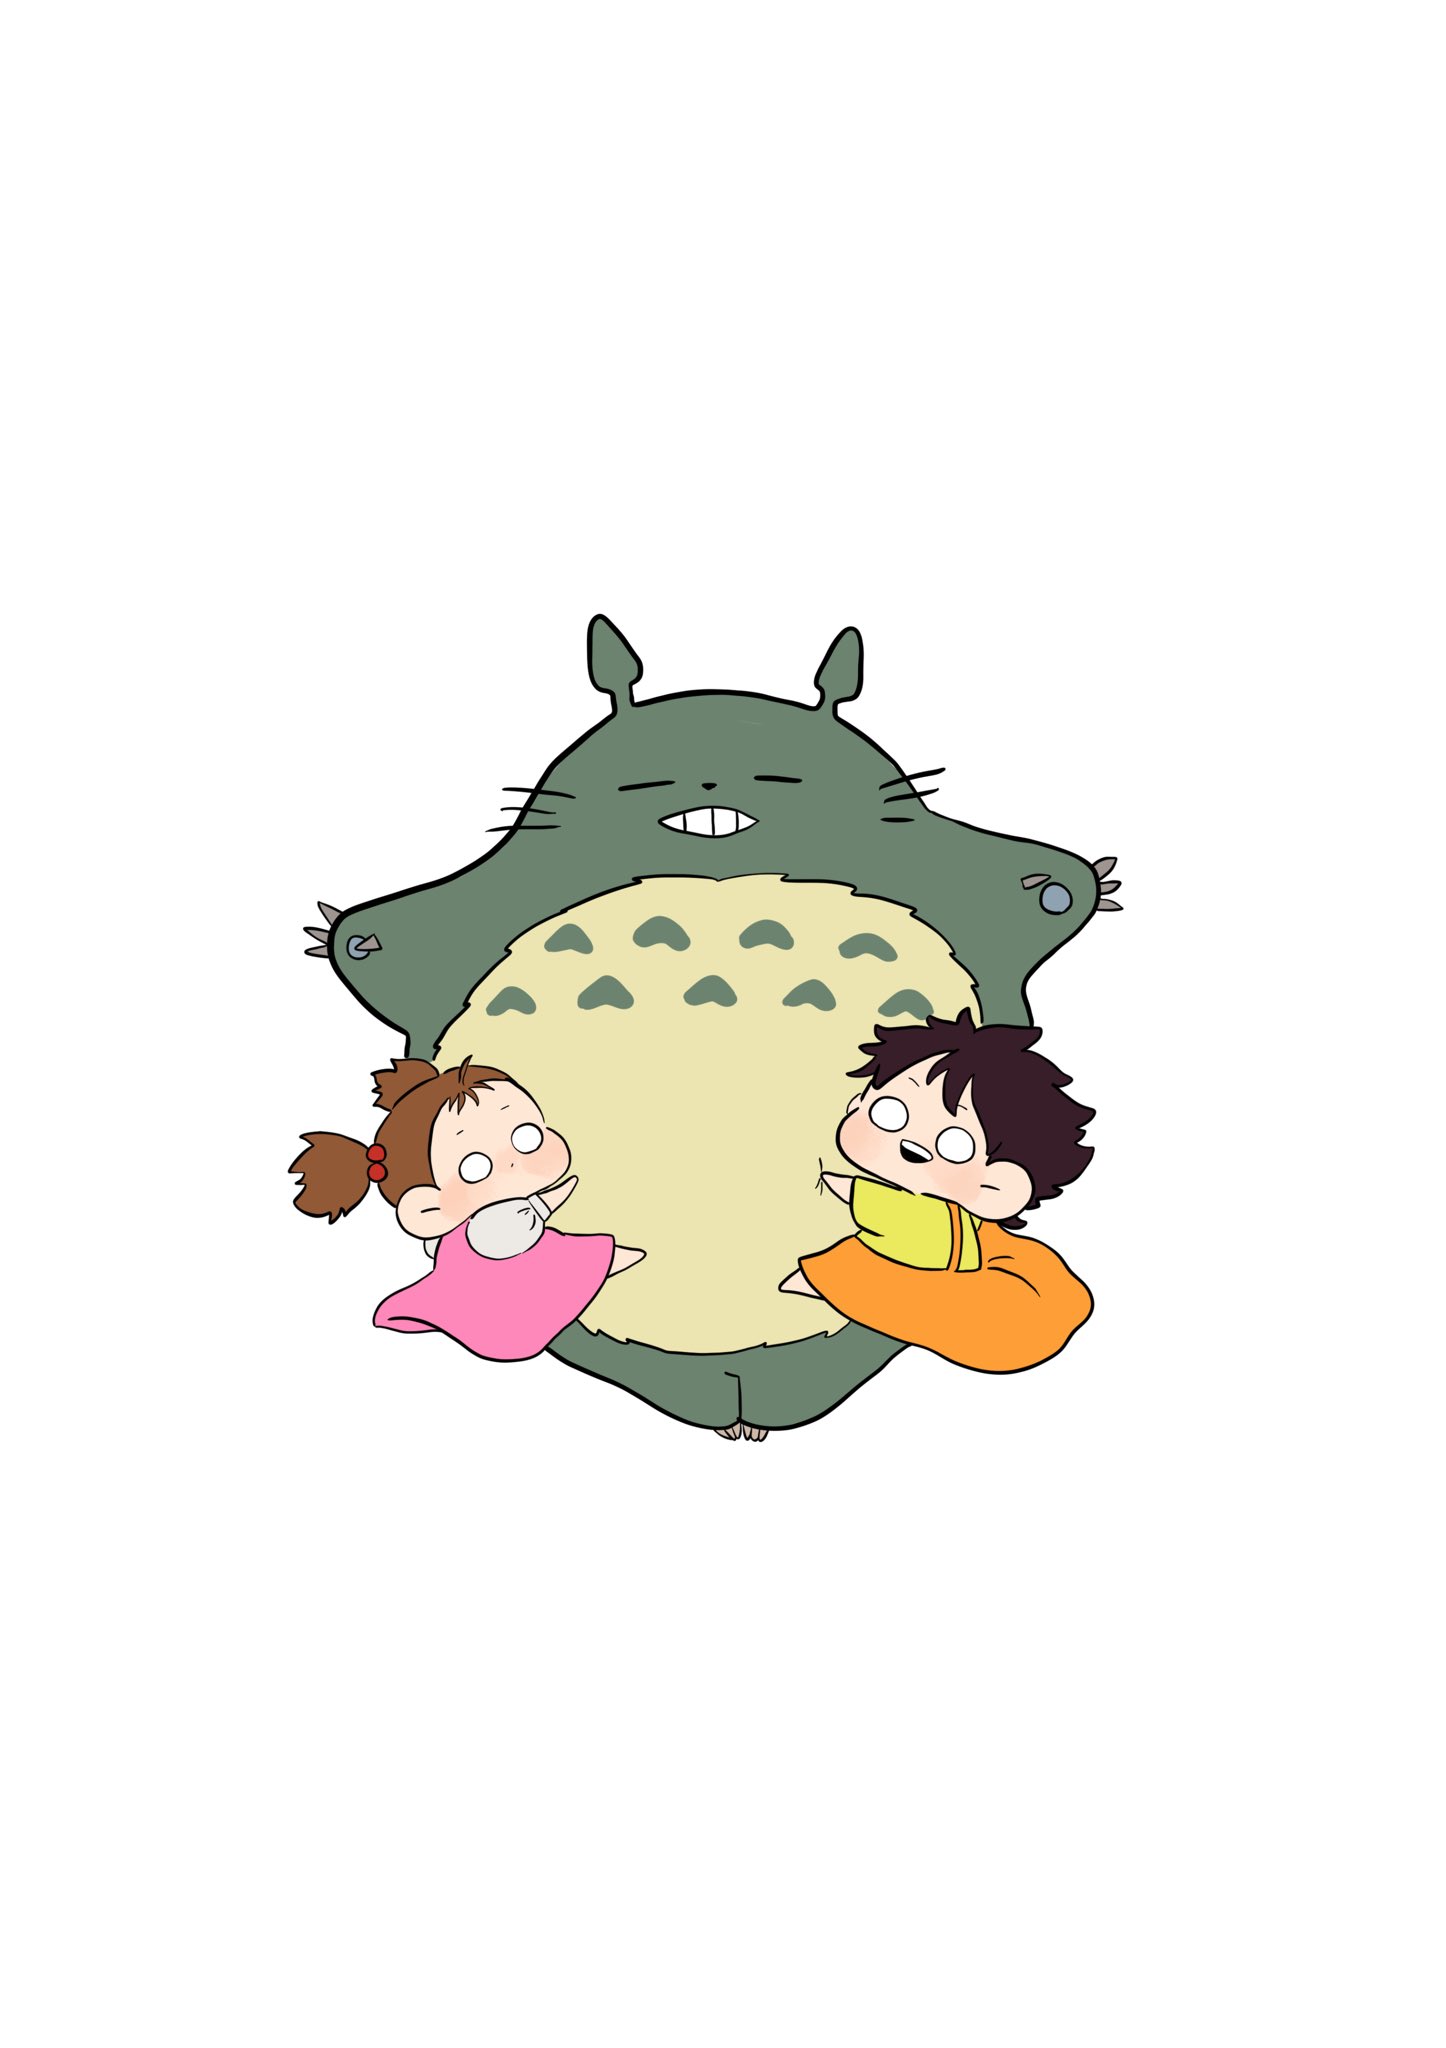 ぐで太郎 ずっと描きたかったのです ジブリ Ghibli Ghibliredraw Illustration イラスト T Co Igoibm7rig Twitter